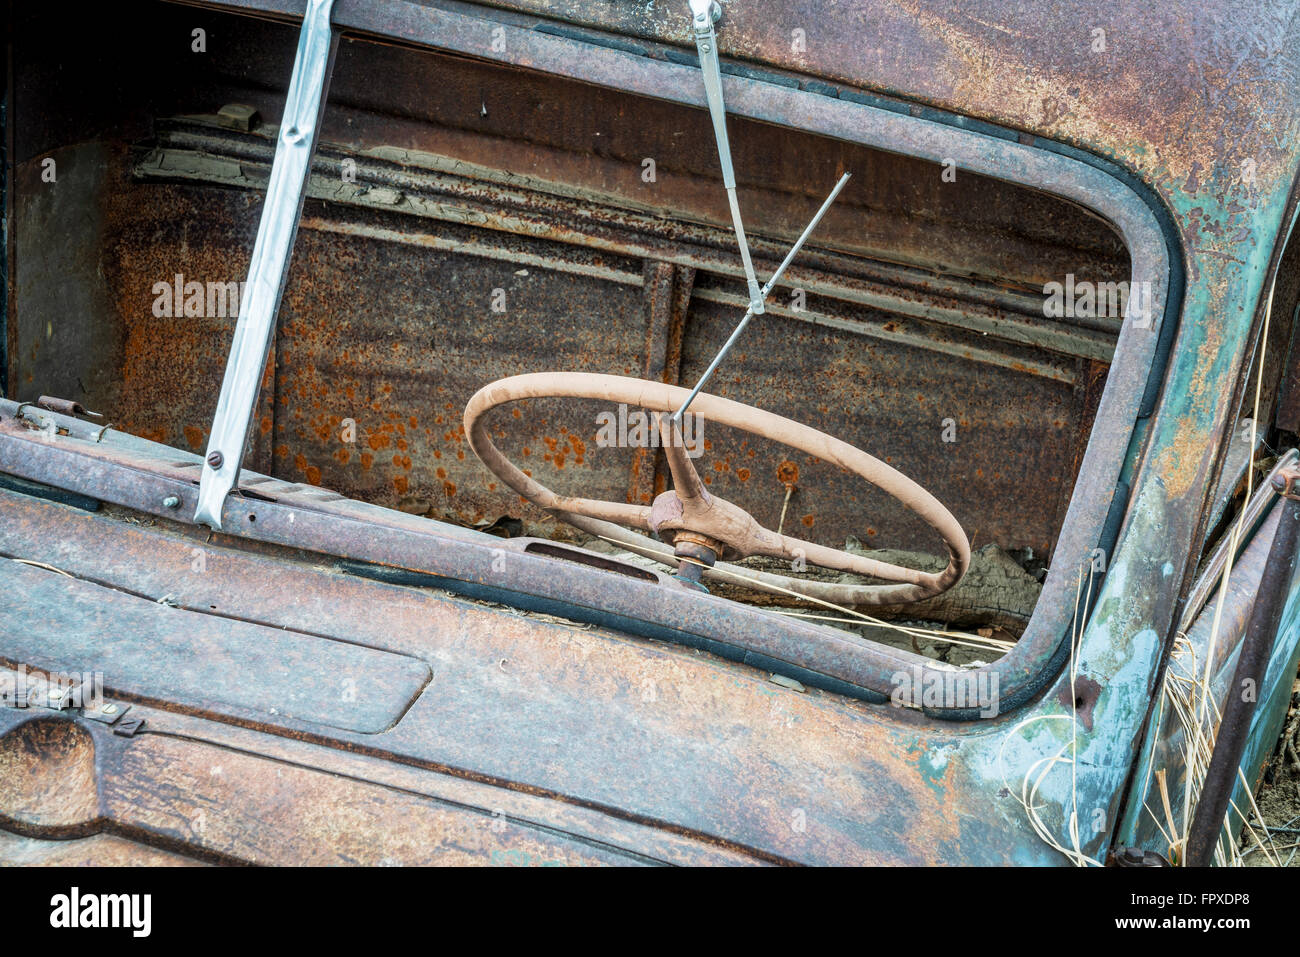 Basura coche oxidado, vista frontal con volante a través del parabrisas y limpiaparabrisas sin vidrio Foto de stock